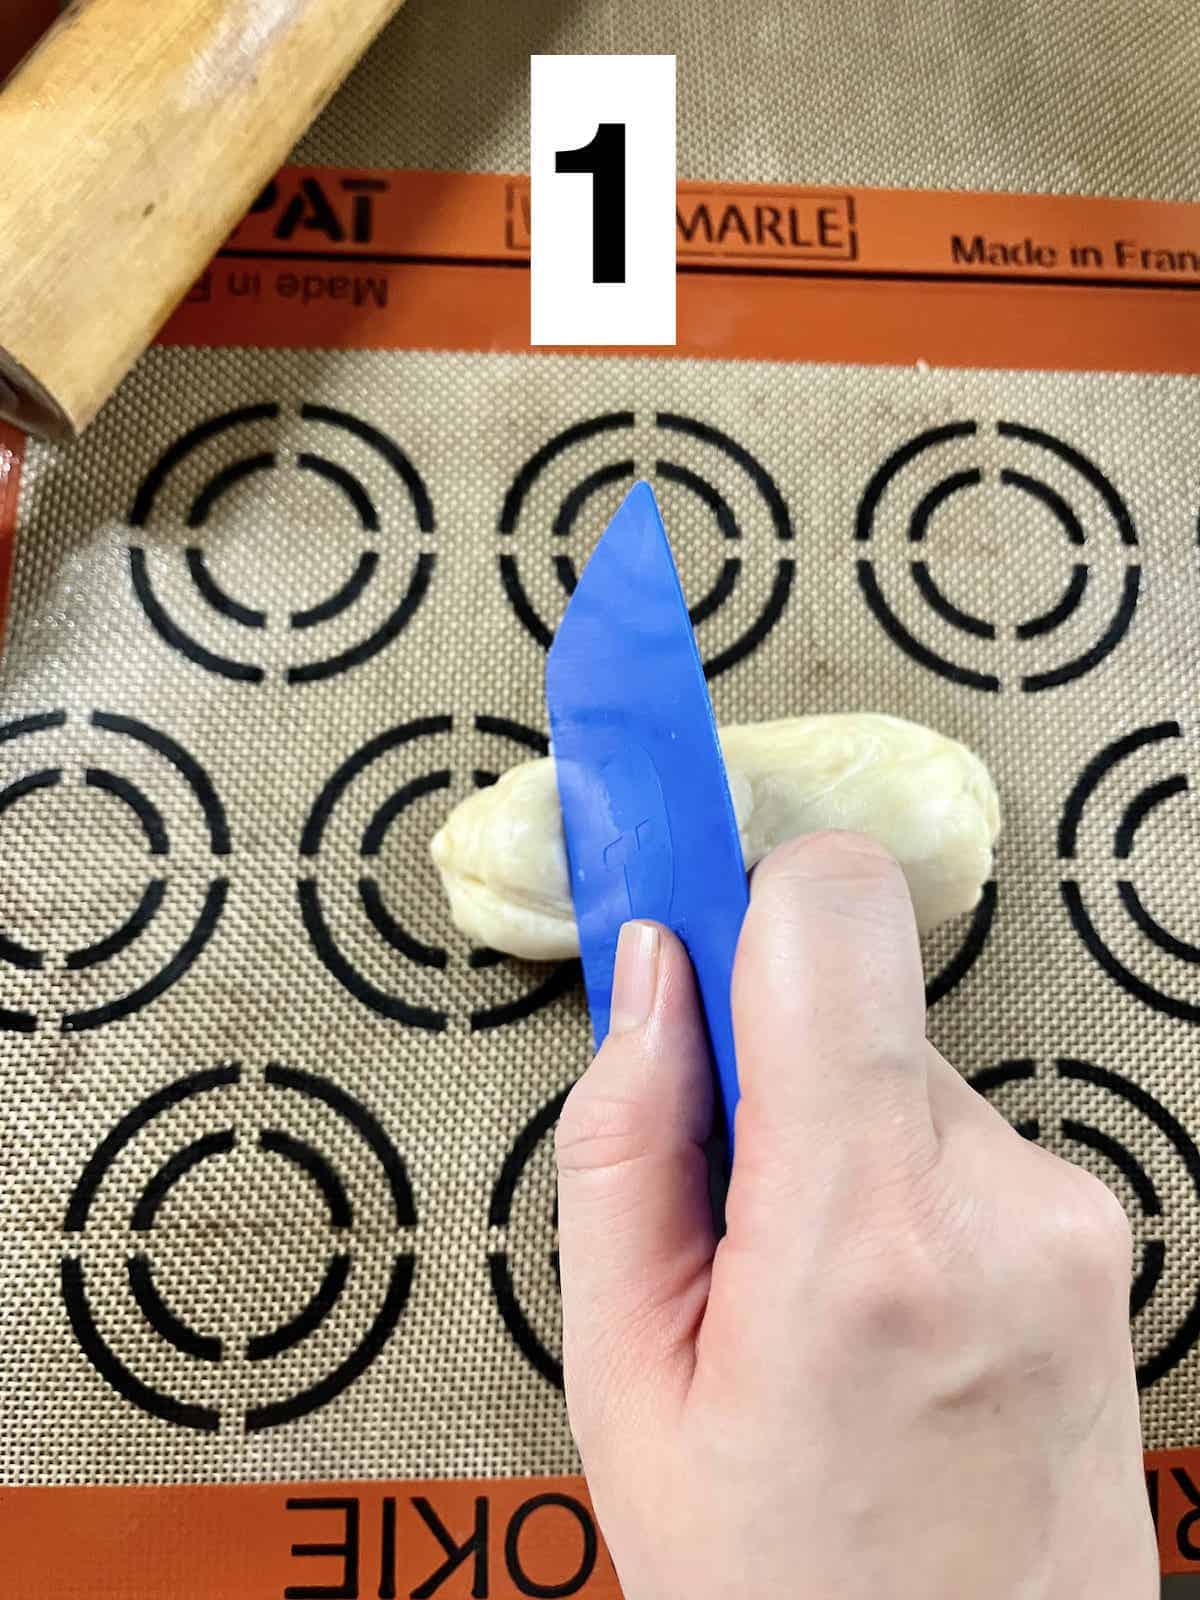 Using a dough scraper to cut the log of dough.